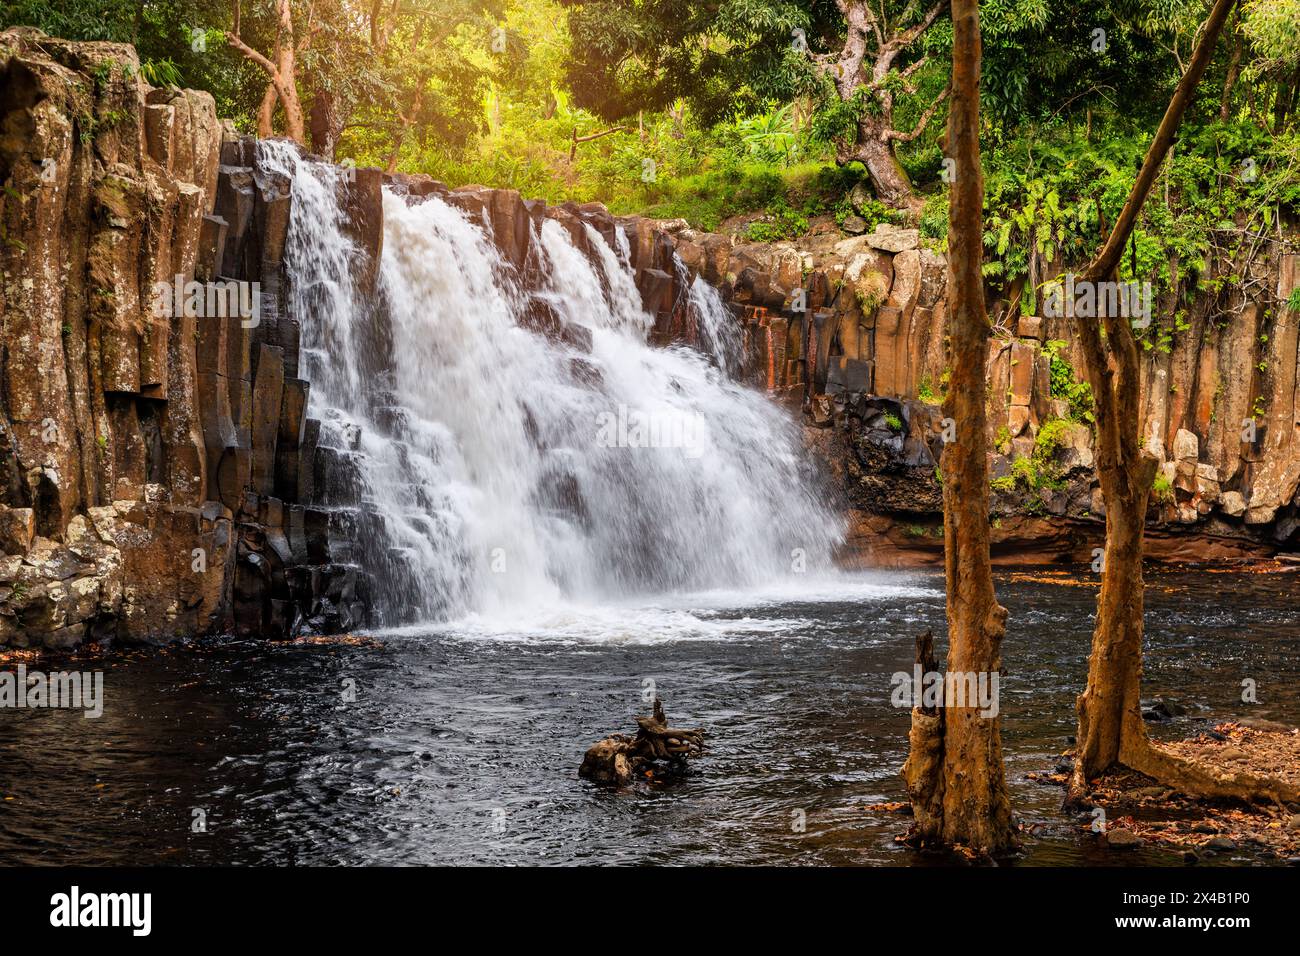 Rochester fällt auf die Insel Mauritius. Wasserfall im Dschungel der tropischen Insel Mauritius. Versteckter Schatz Rochester fällt auf Mauritius Stockfoto